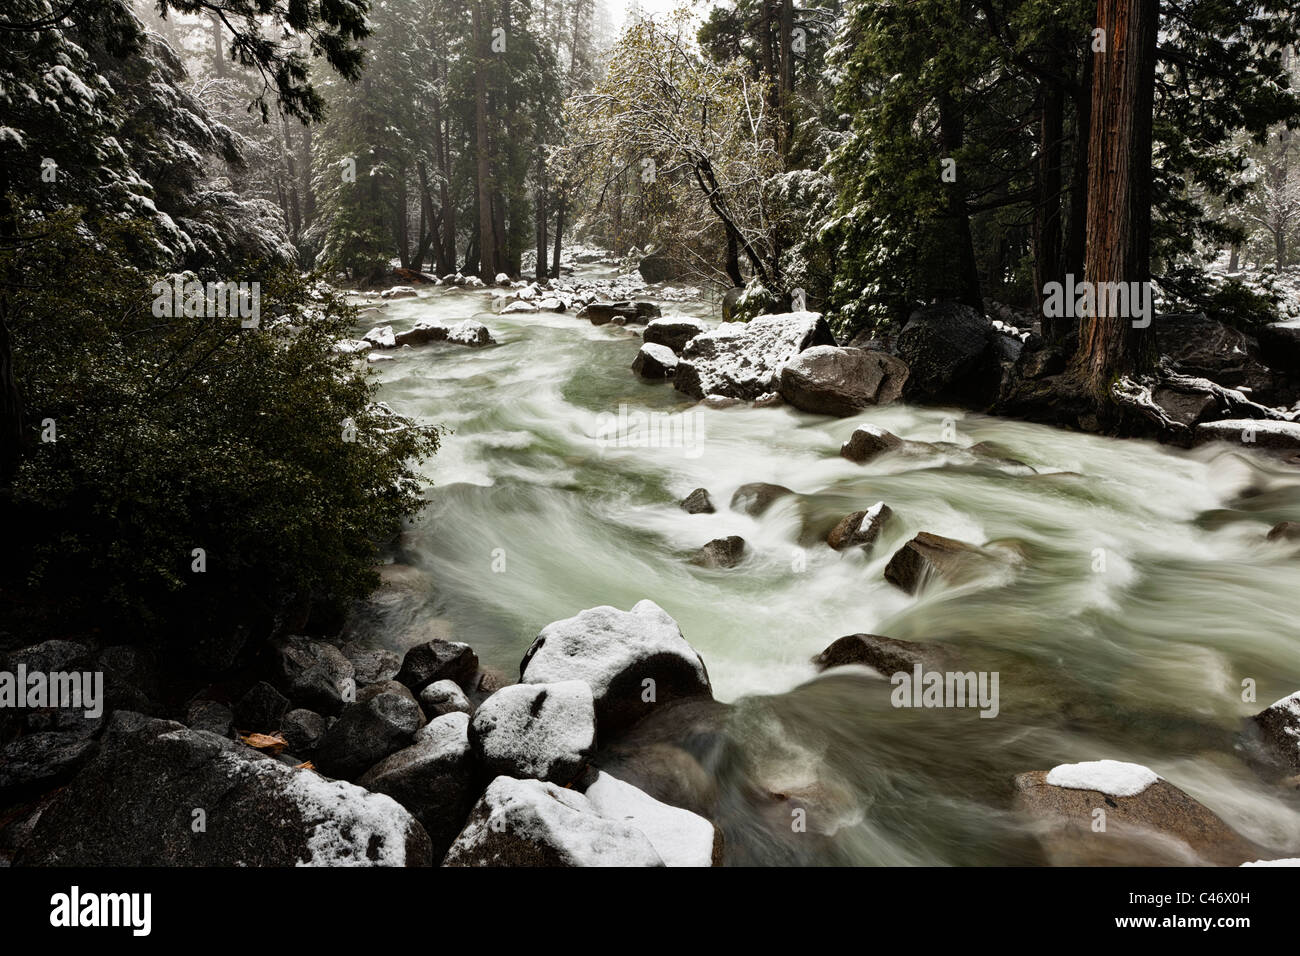 Tranquille, pittoresque romantique slow motion Avis de déménagement rapide river l'eau de ruissellement de la fonte des neiges au printemps et neige fraîchement tombée, Yosemite National Park USA Banque D'Images